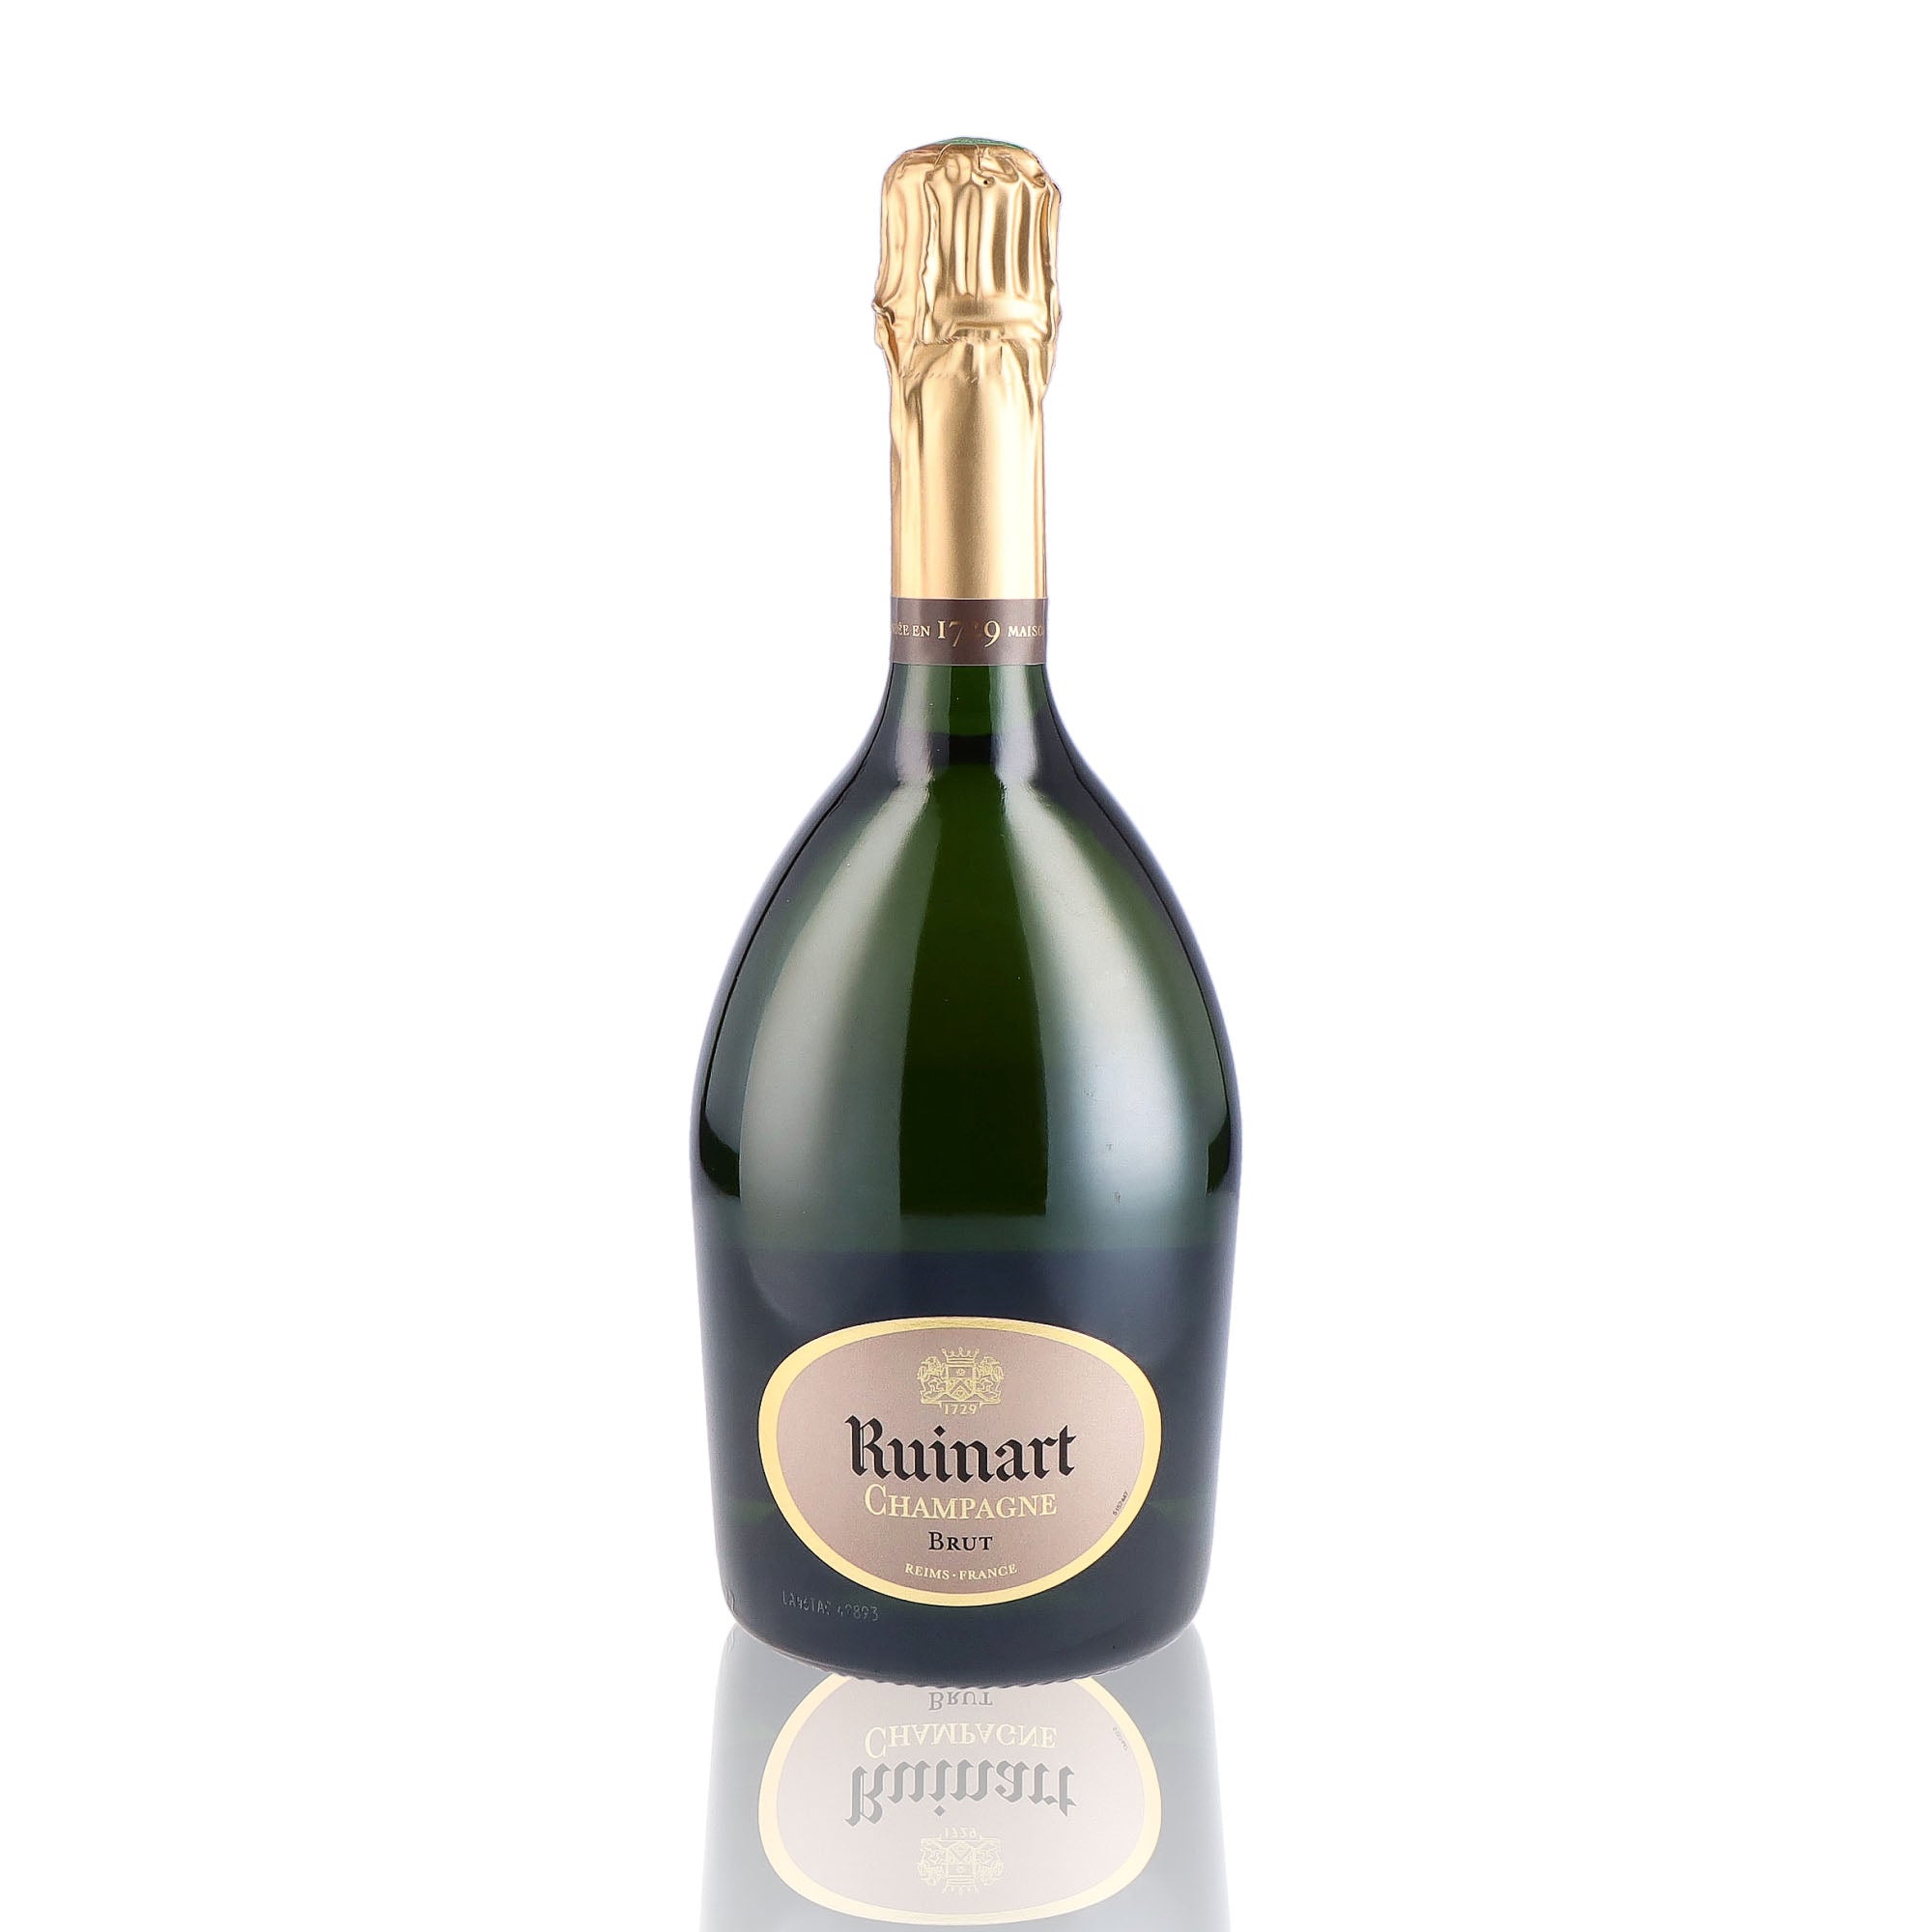 Une bouteille de champagne de la marque Ruinart, de type brut, nommée R de Ruinart.